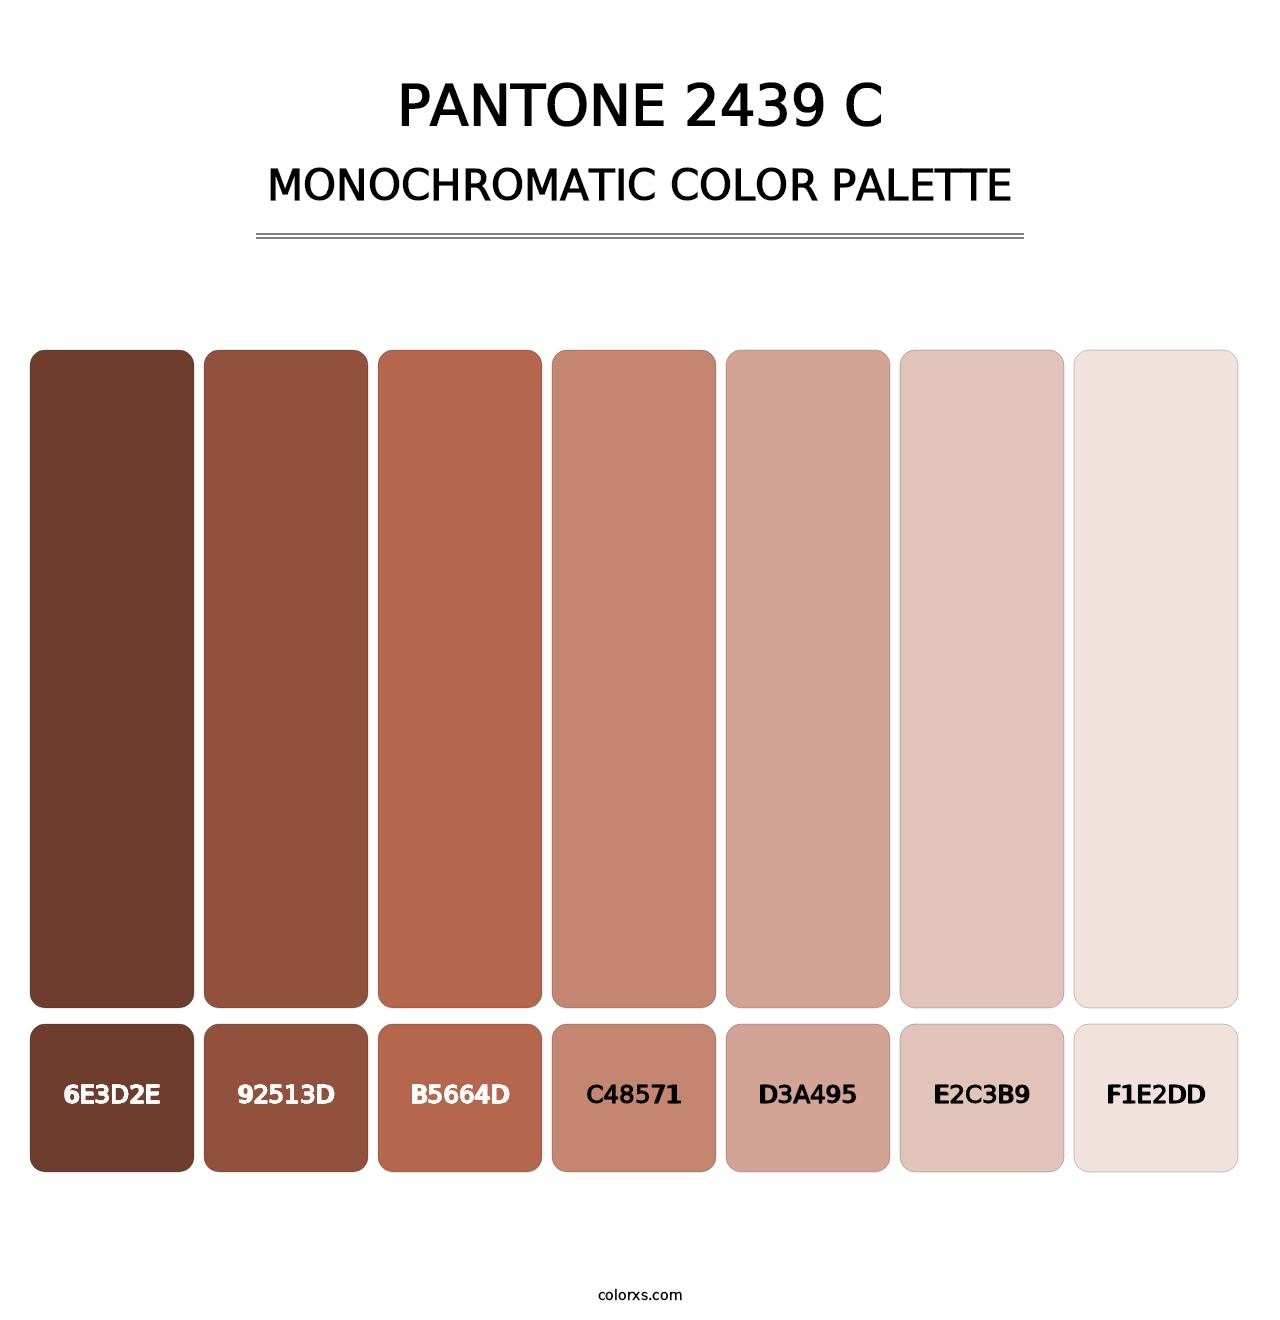 PANTONE 2439 C - Monochromatic Color Palette